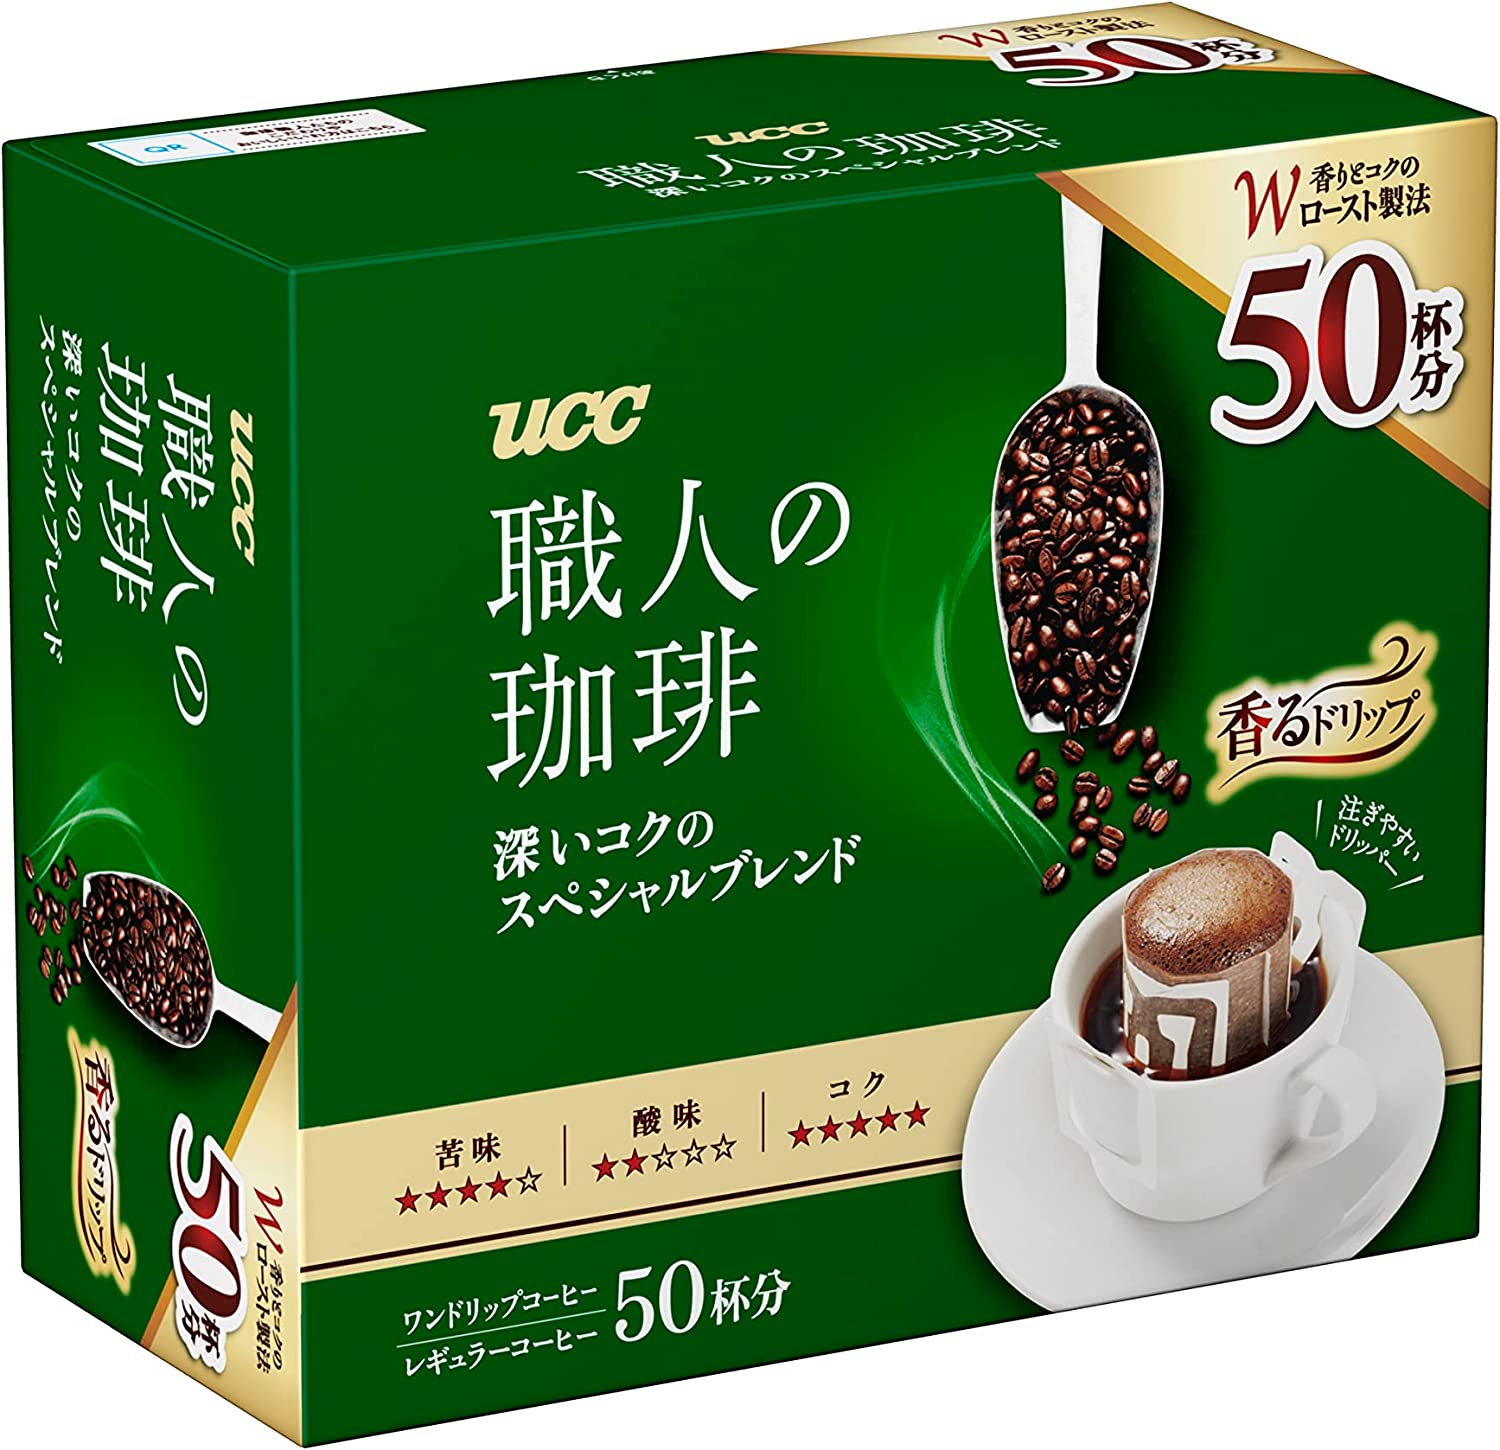 UCC上島珈琲 UCC上島咖啡 職人的咖啡 手沖咖啡 濃郁特製品牌 50杯份